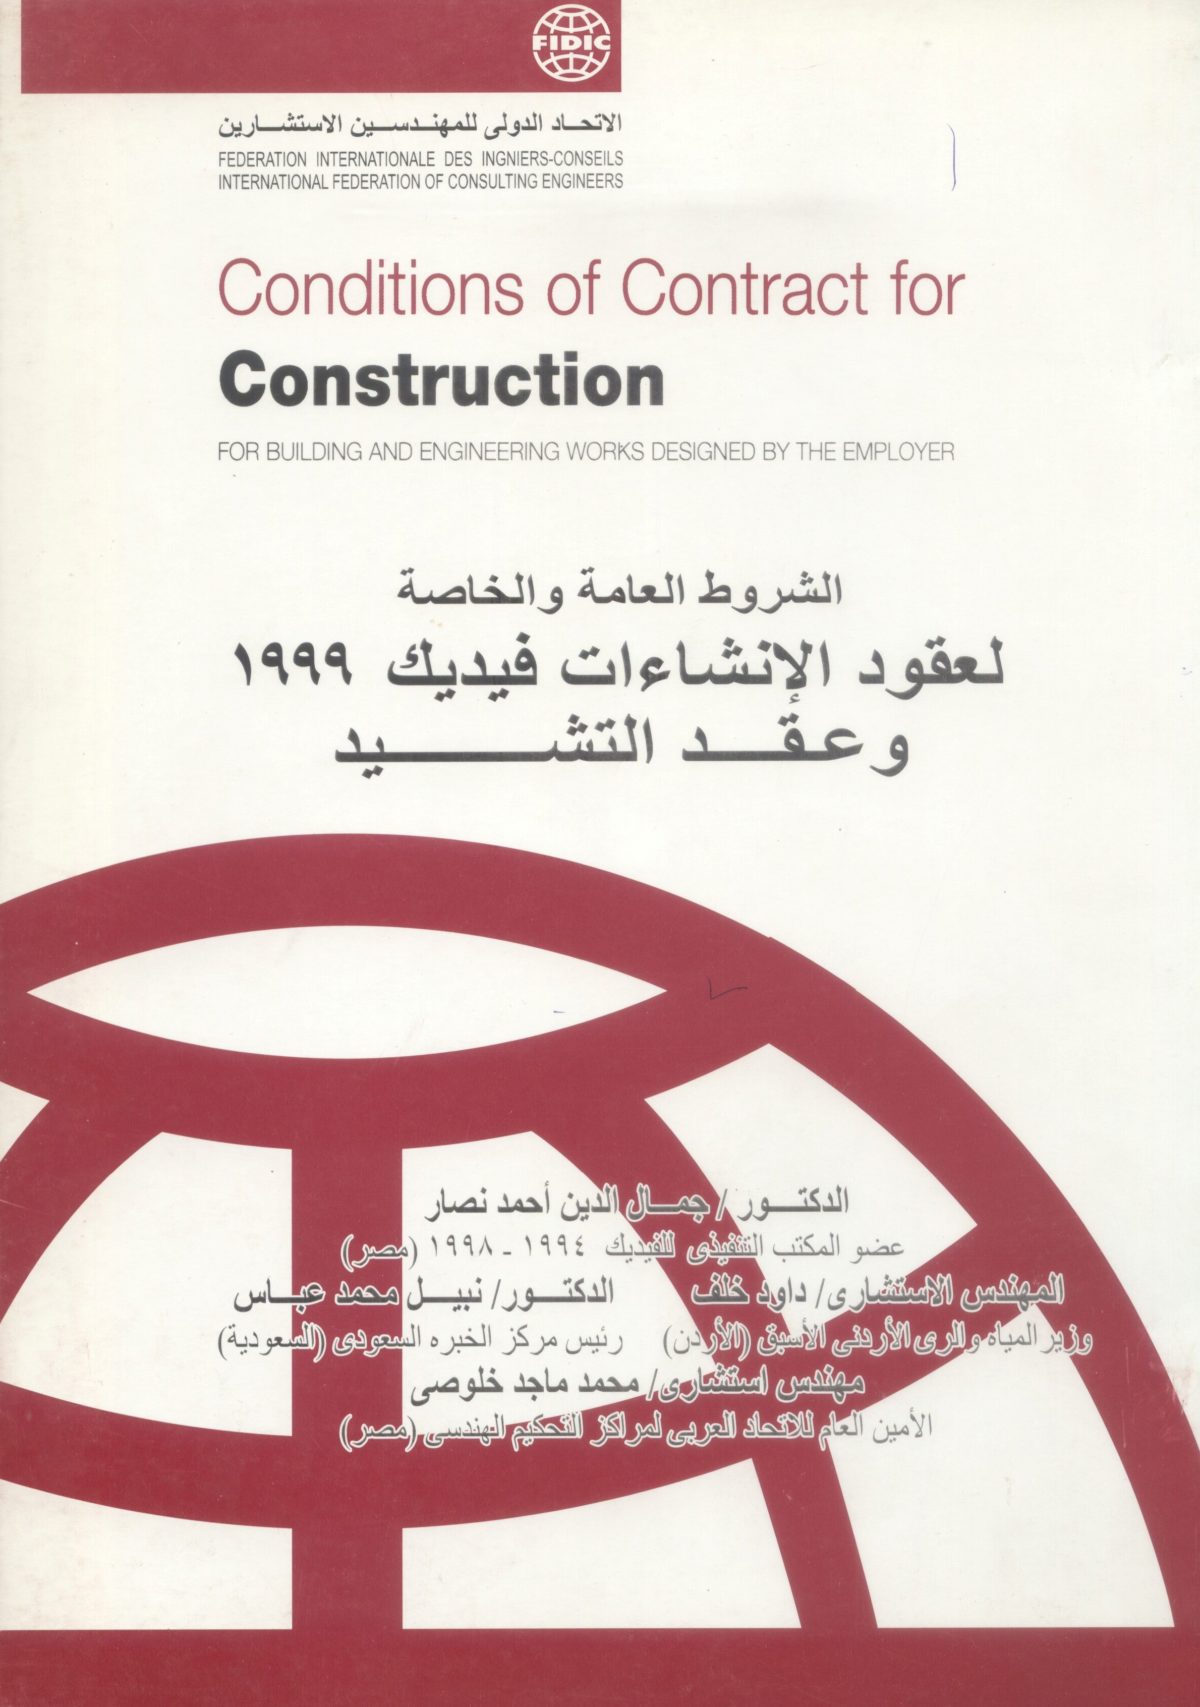 الشروط العامة والخاصة لعقود الإنشاءات فيديك 1999م